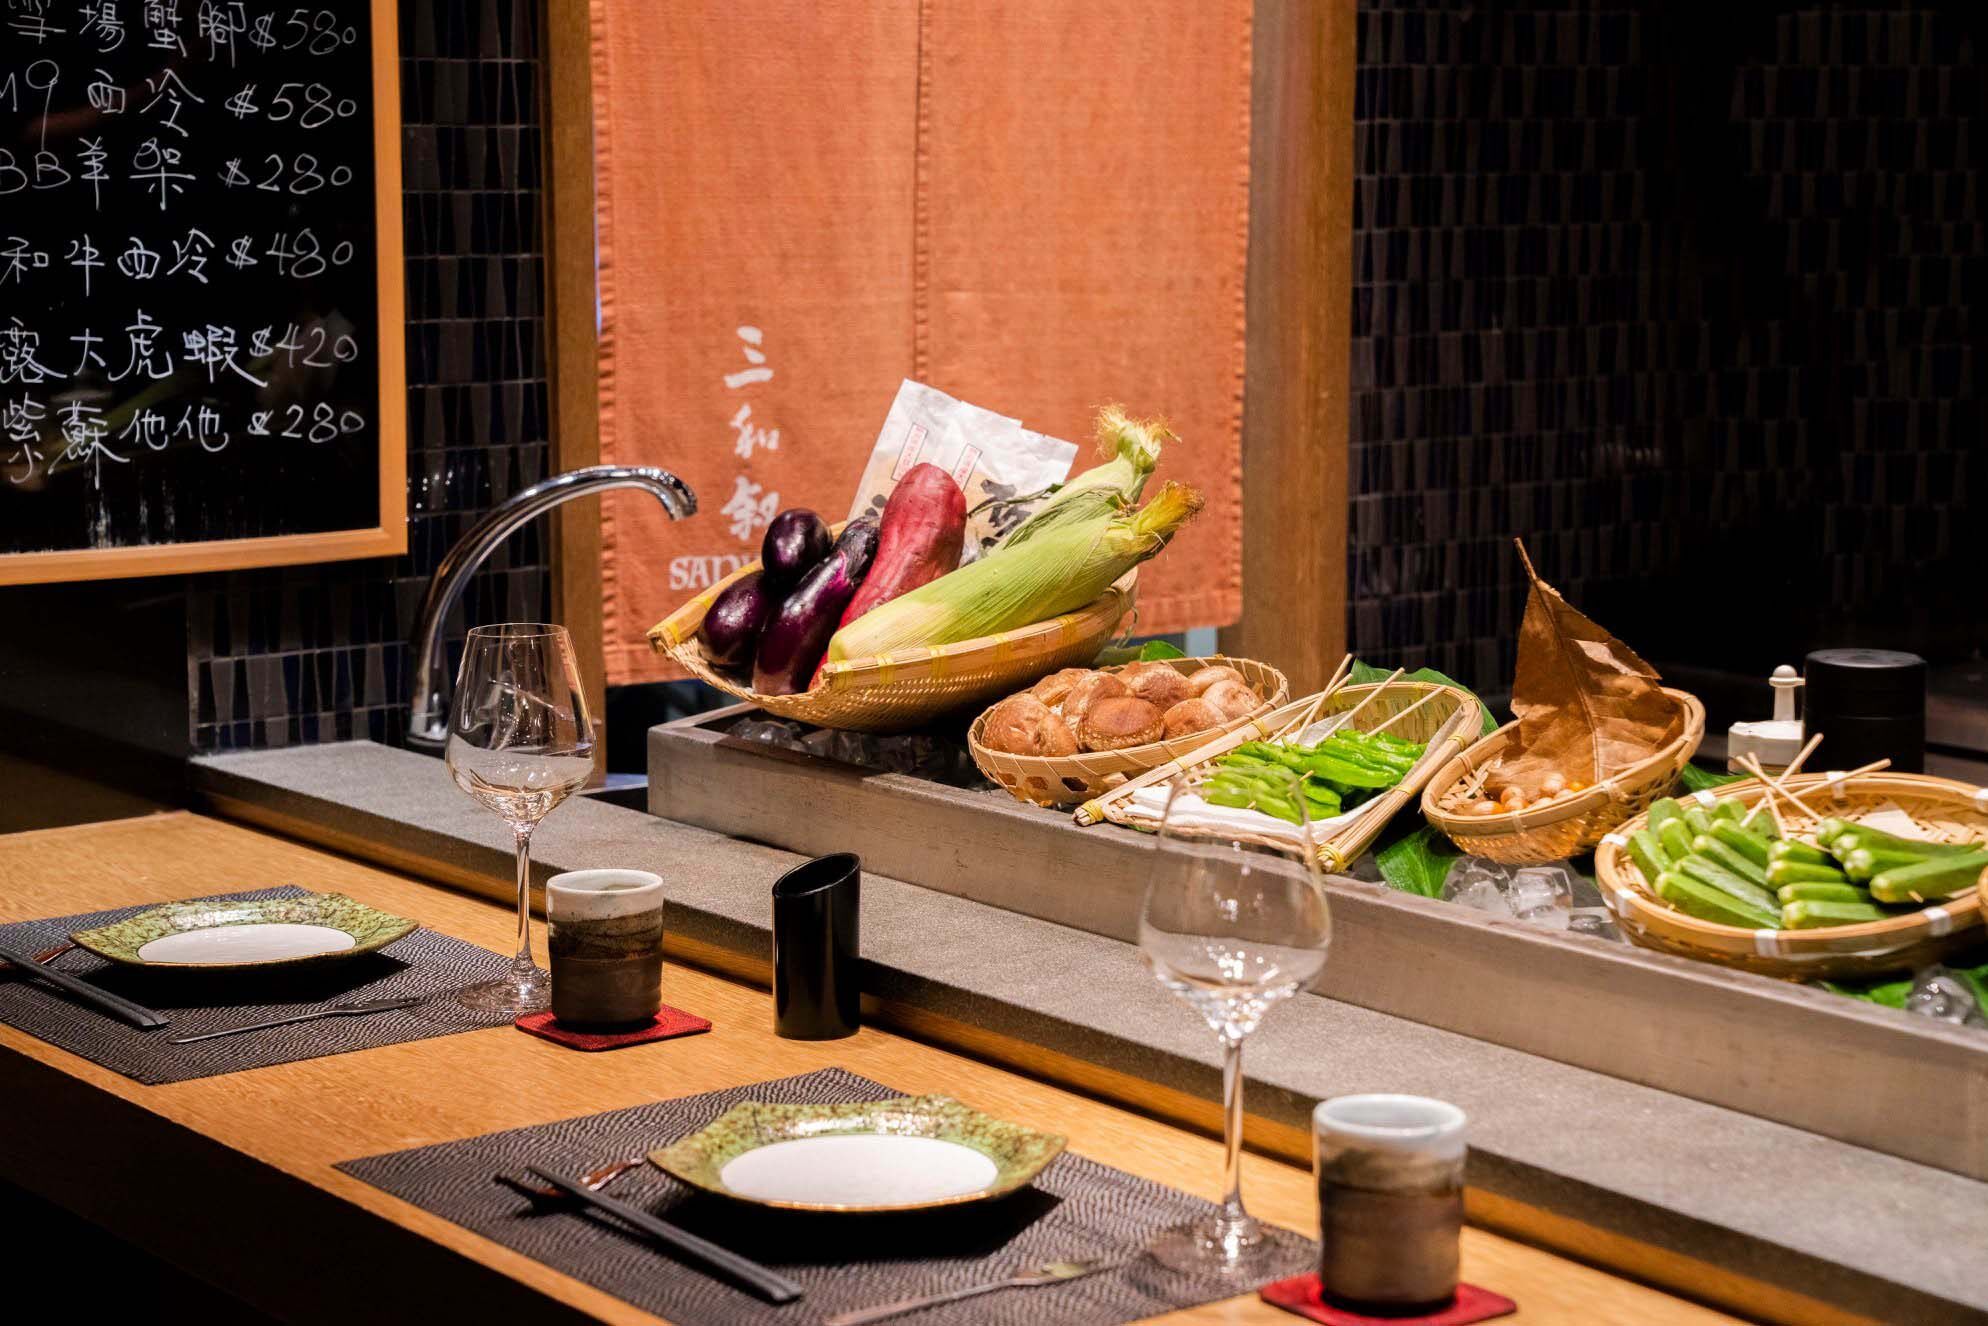 在九龍城一幢獨立大樓內的「三和敘」是一家日式餐飲概念餐廳，每層主打各種日本料理，包括：壽司、鐵板燒、爐端燒及和食。餐廳典雅的和式裝潢，再配上淺木色日系設計，感受到無比舒適的空間感。 它們特別配合開放式廚房設計，讓客人可以和廚師們聊天閒談，享受一頓難忘的愉悅的用餐體驗。三和敘的主廚嚴選時令食材，奉行不時不食的態度，確保為客人奉上的食物一定是最鮮甜優質。